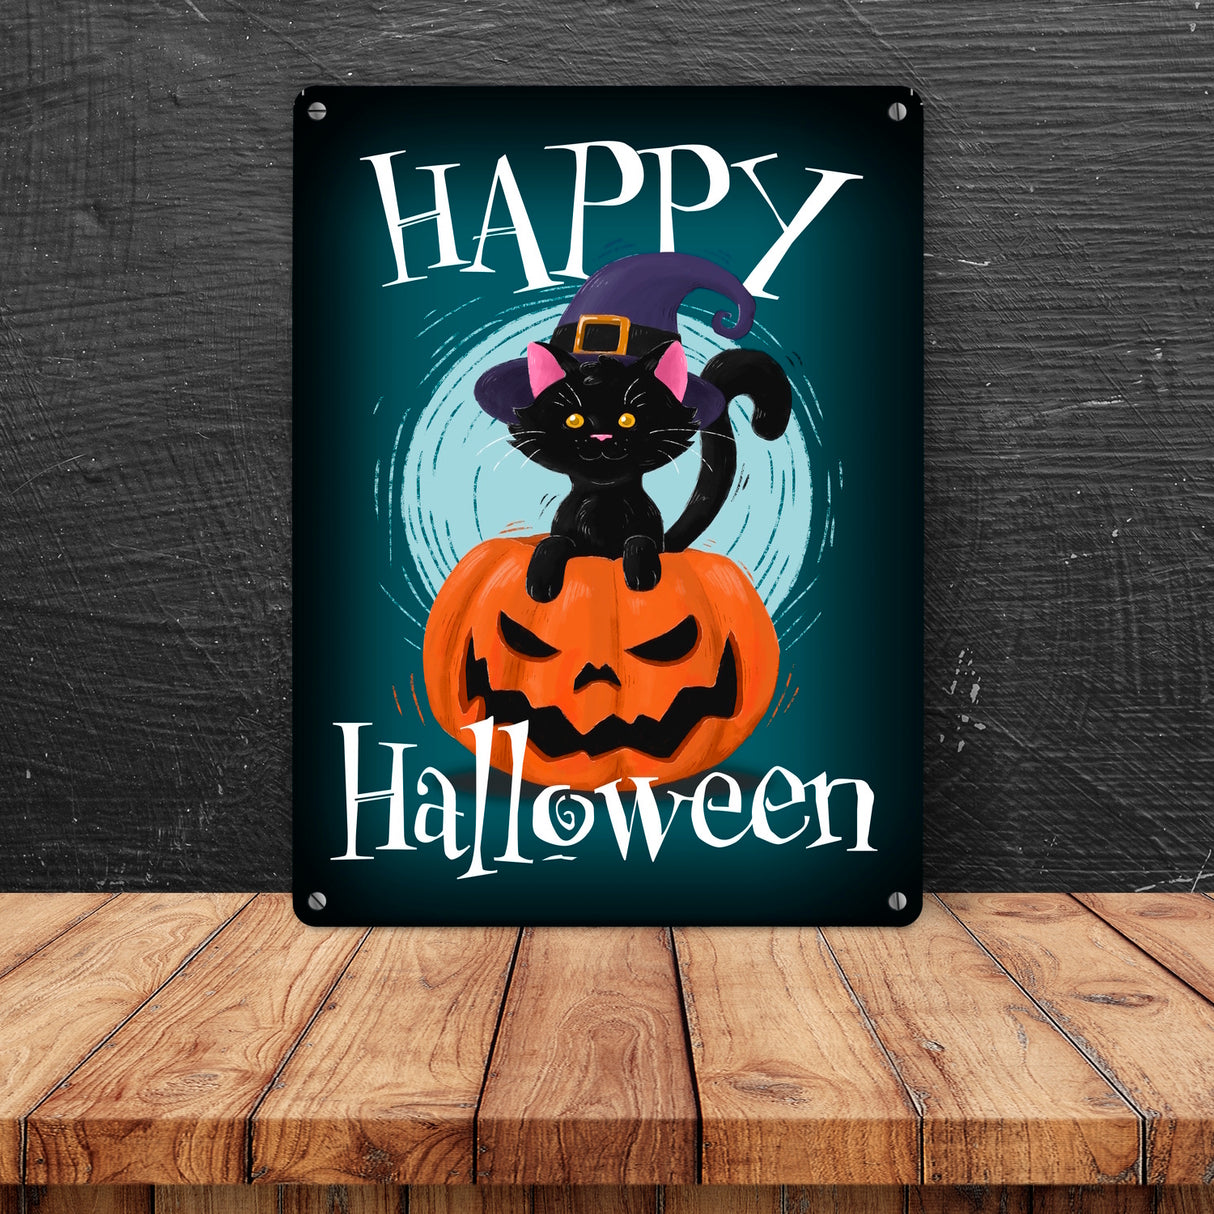 Happy Halloween Metallschild mit niedlicher schwarzer Katze